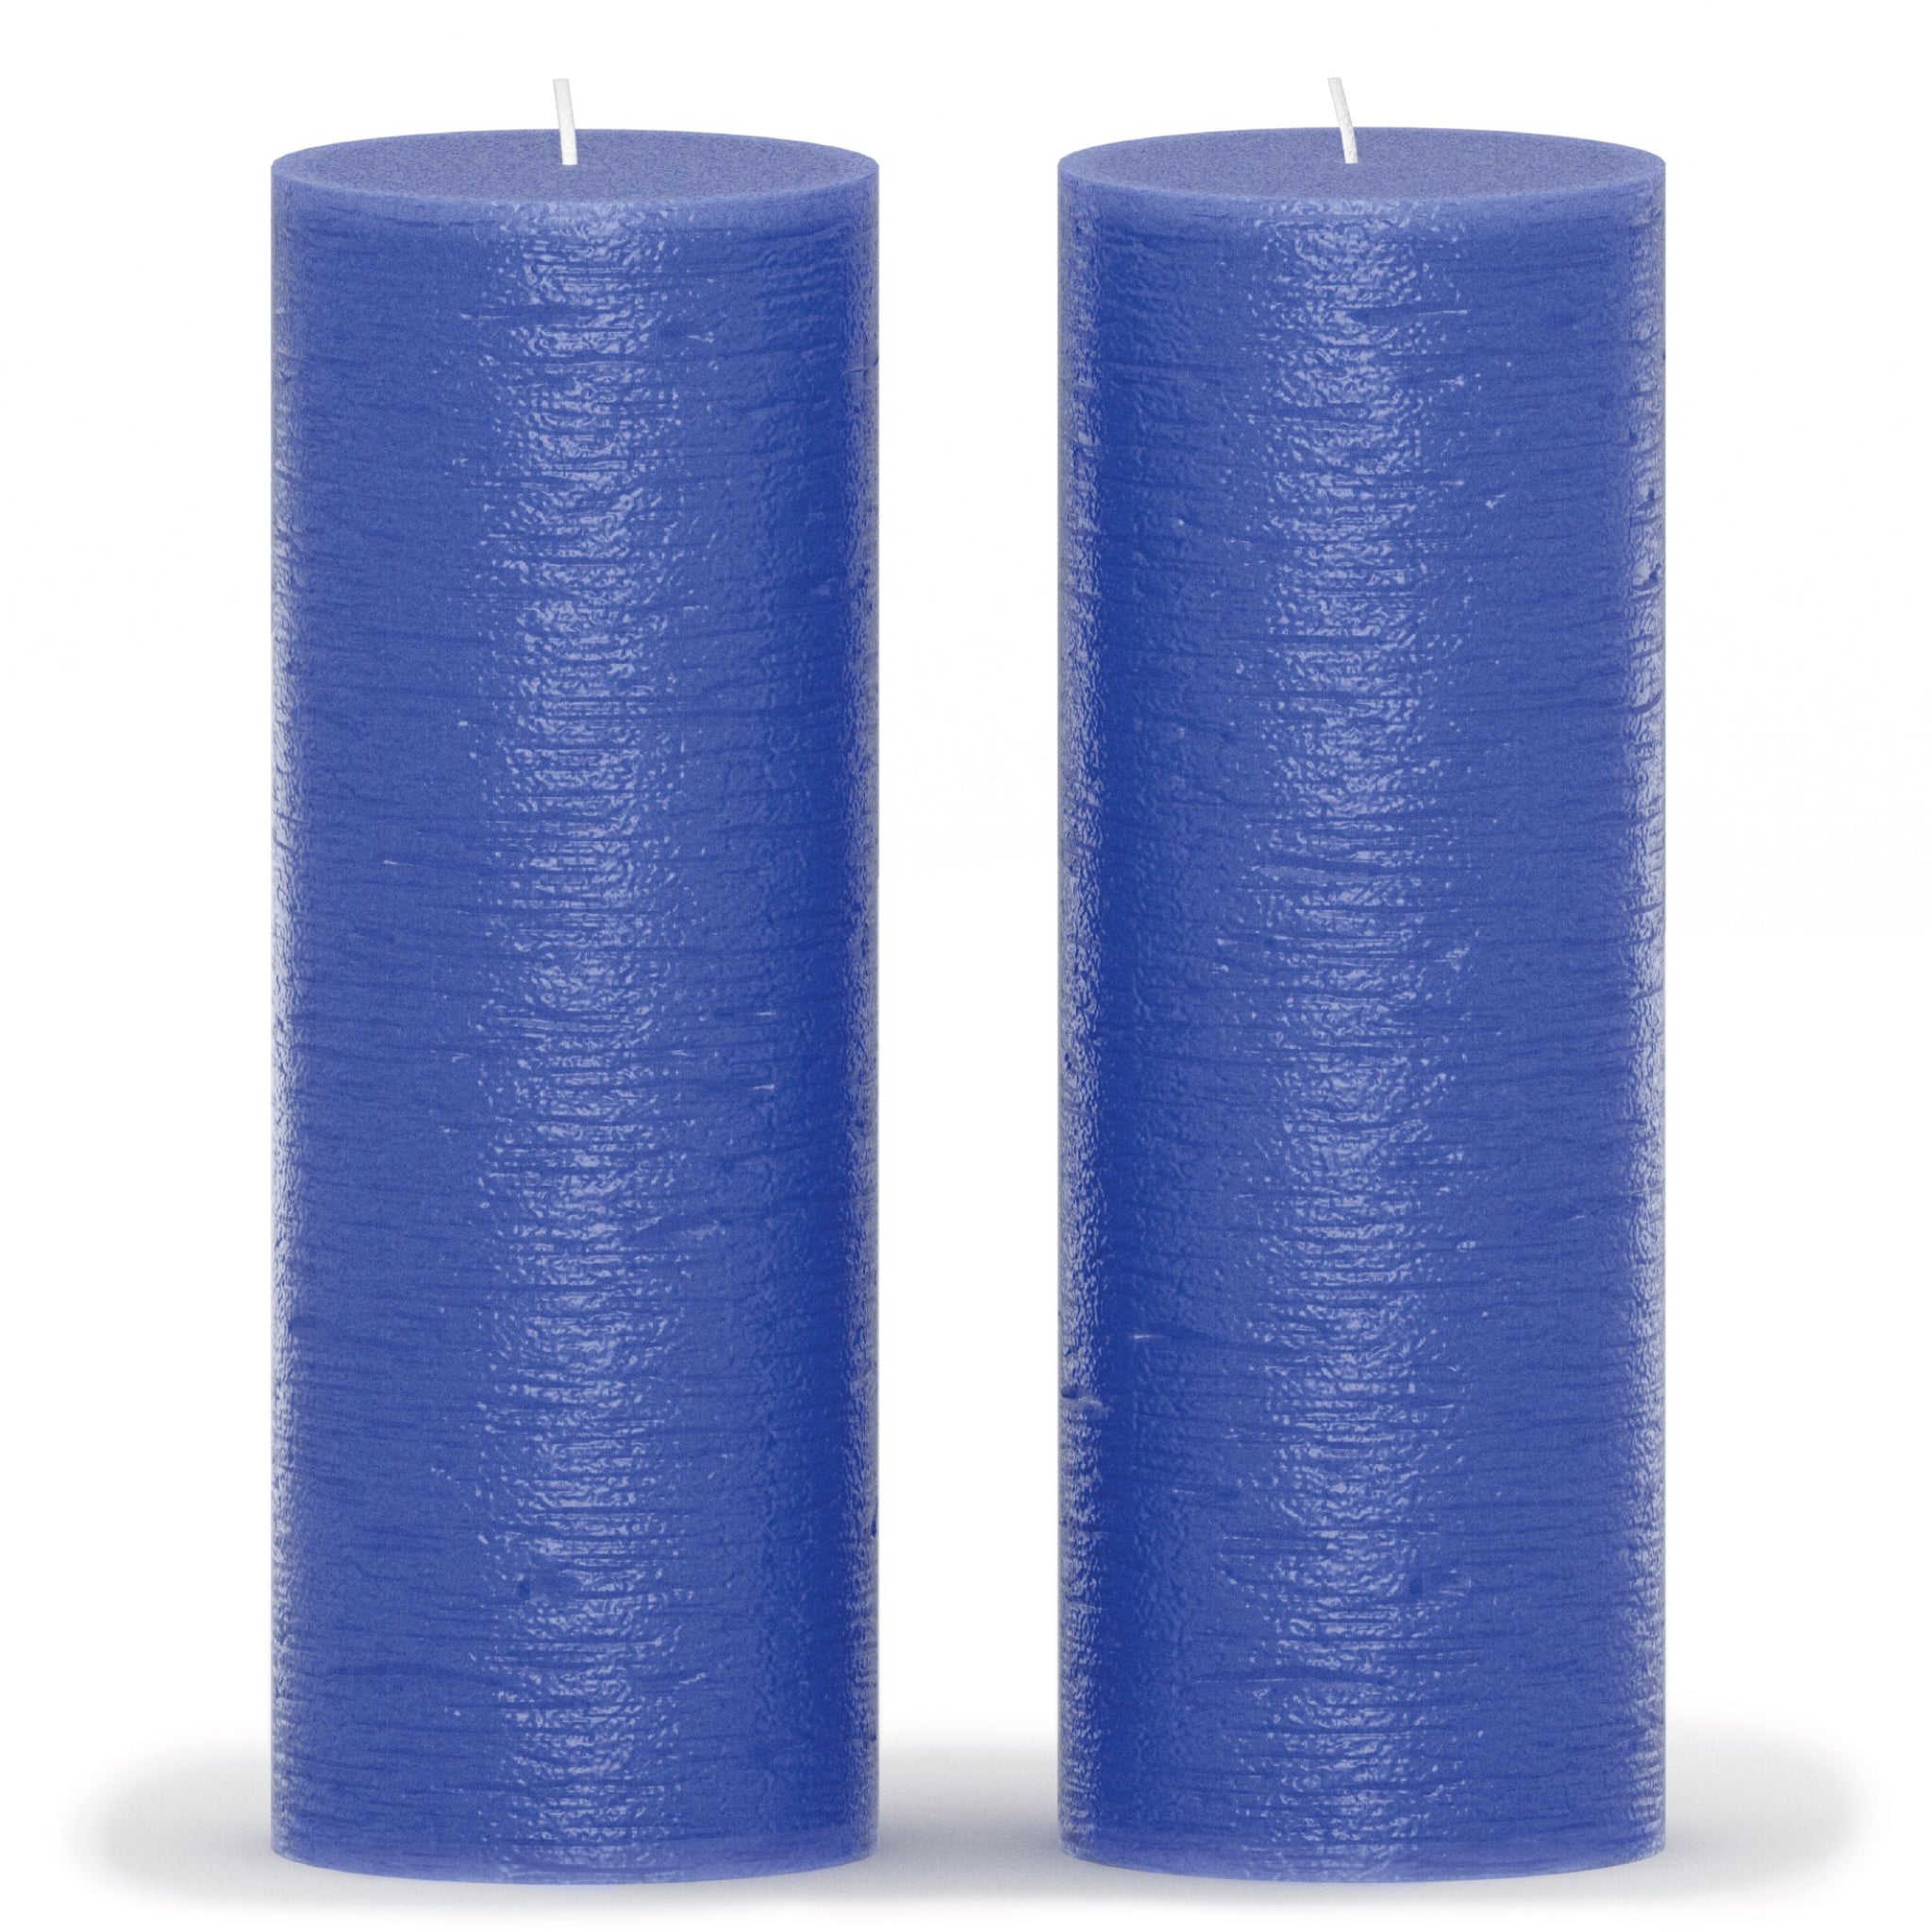 CANDWAX Blue Pillar Candles 8" - Set of 2pcs